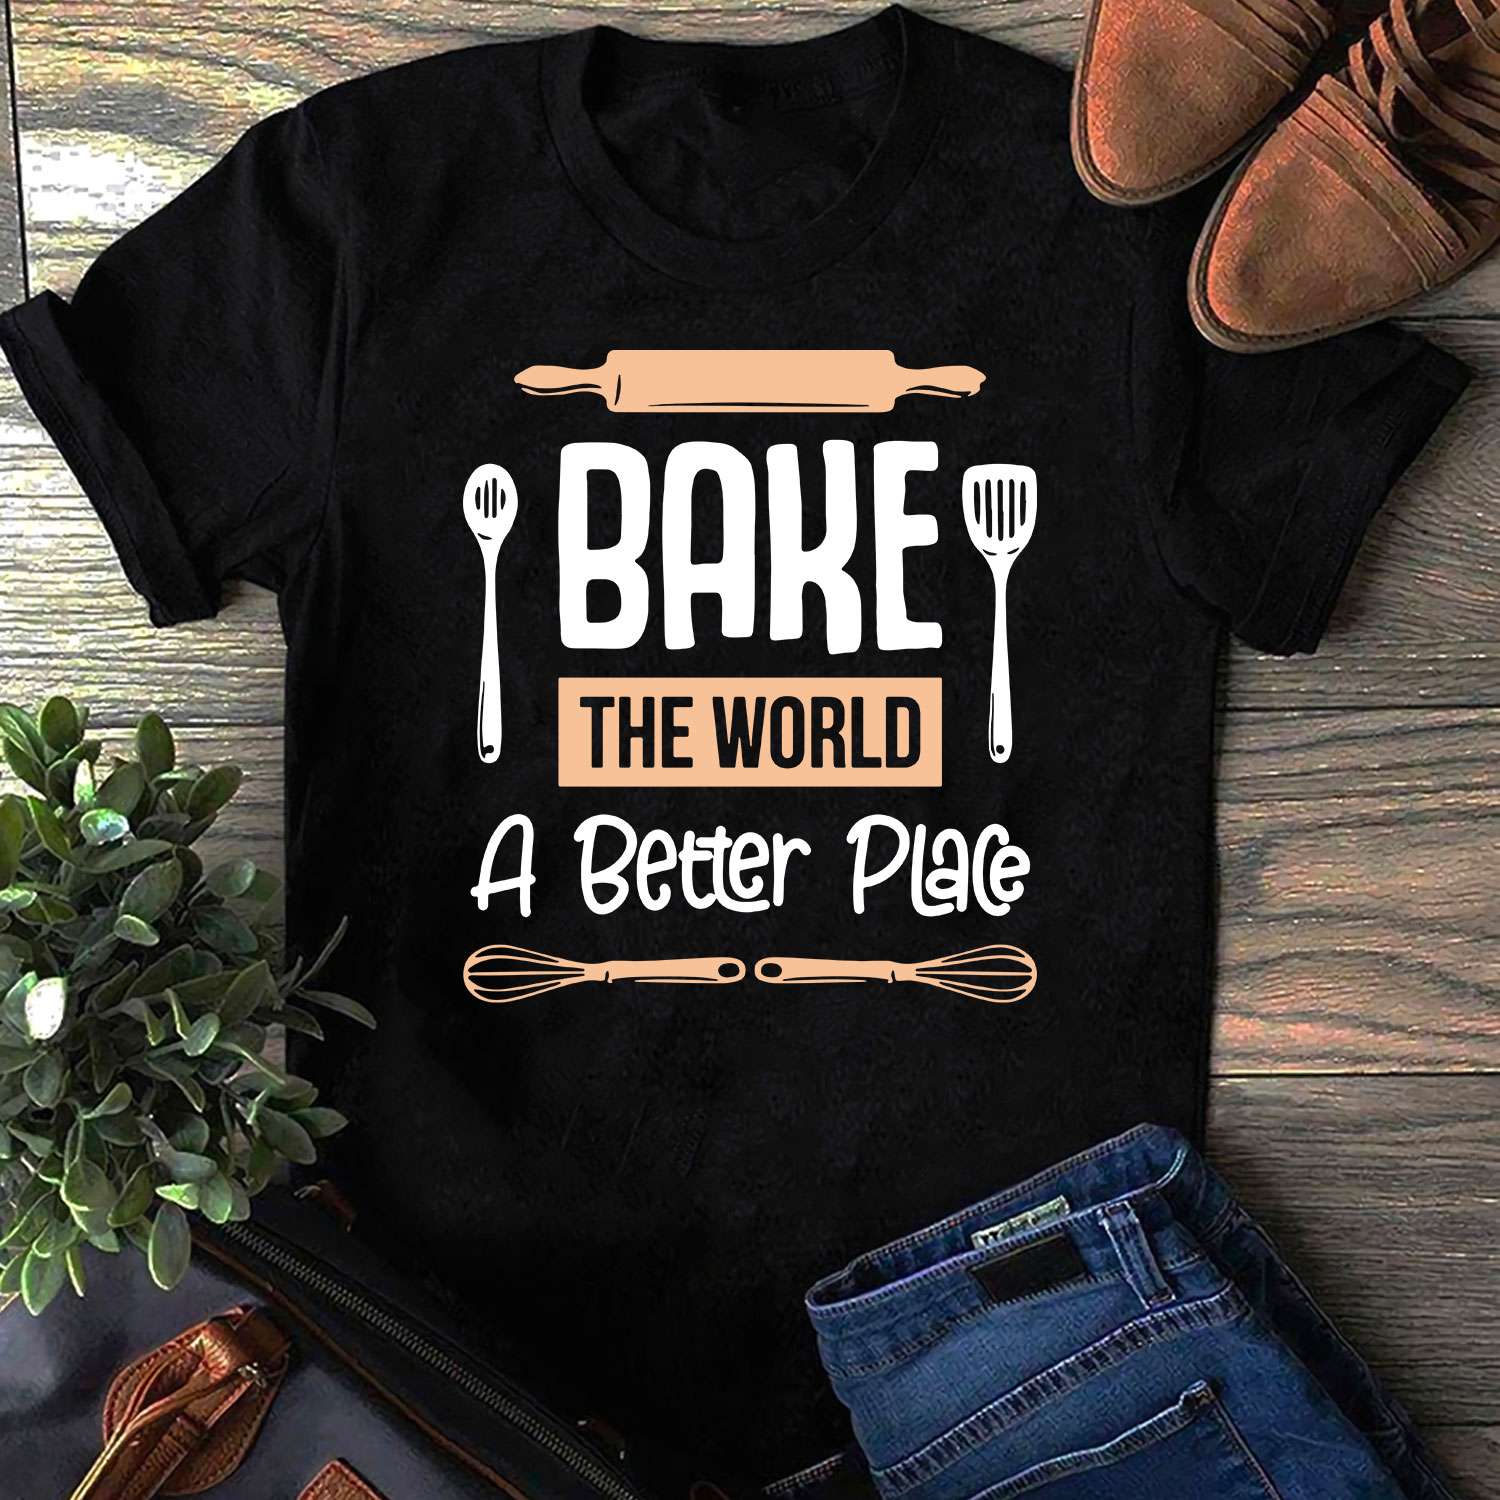 Bake the world a better place - Baker gift T-shirt, bake for better